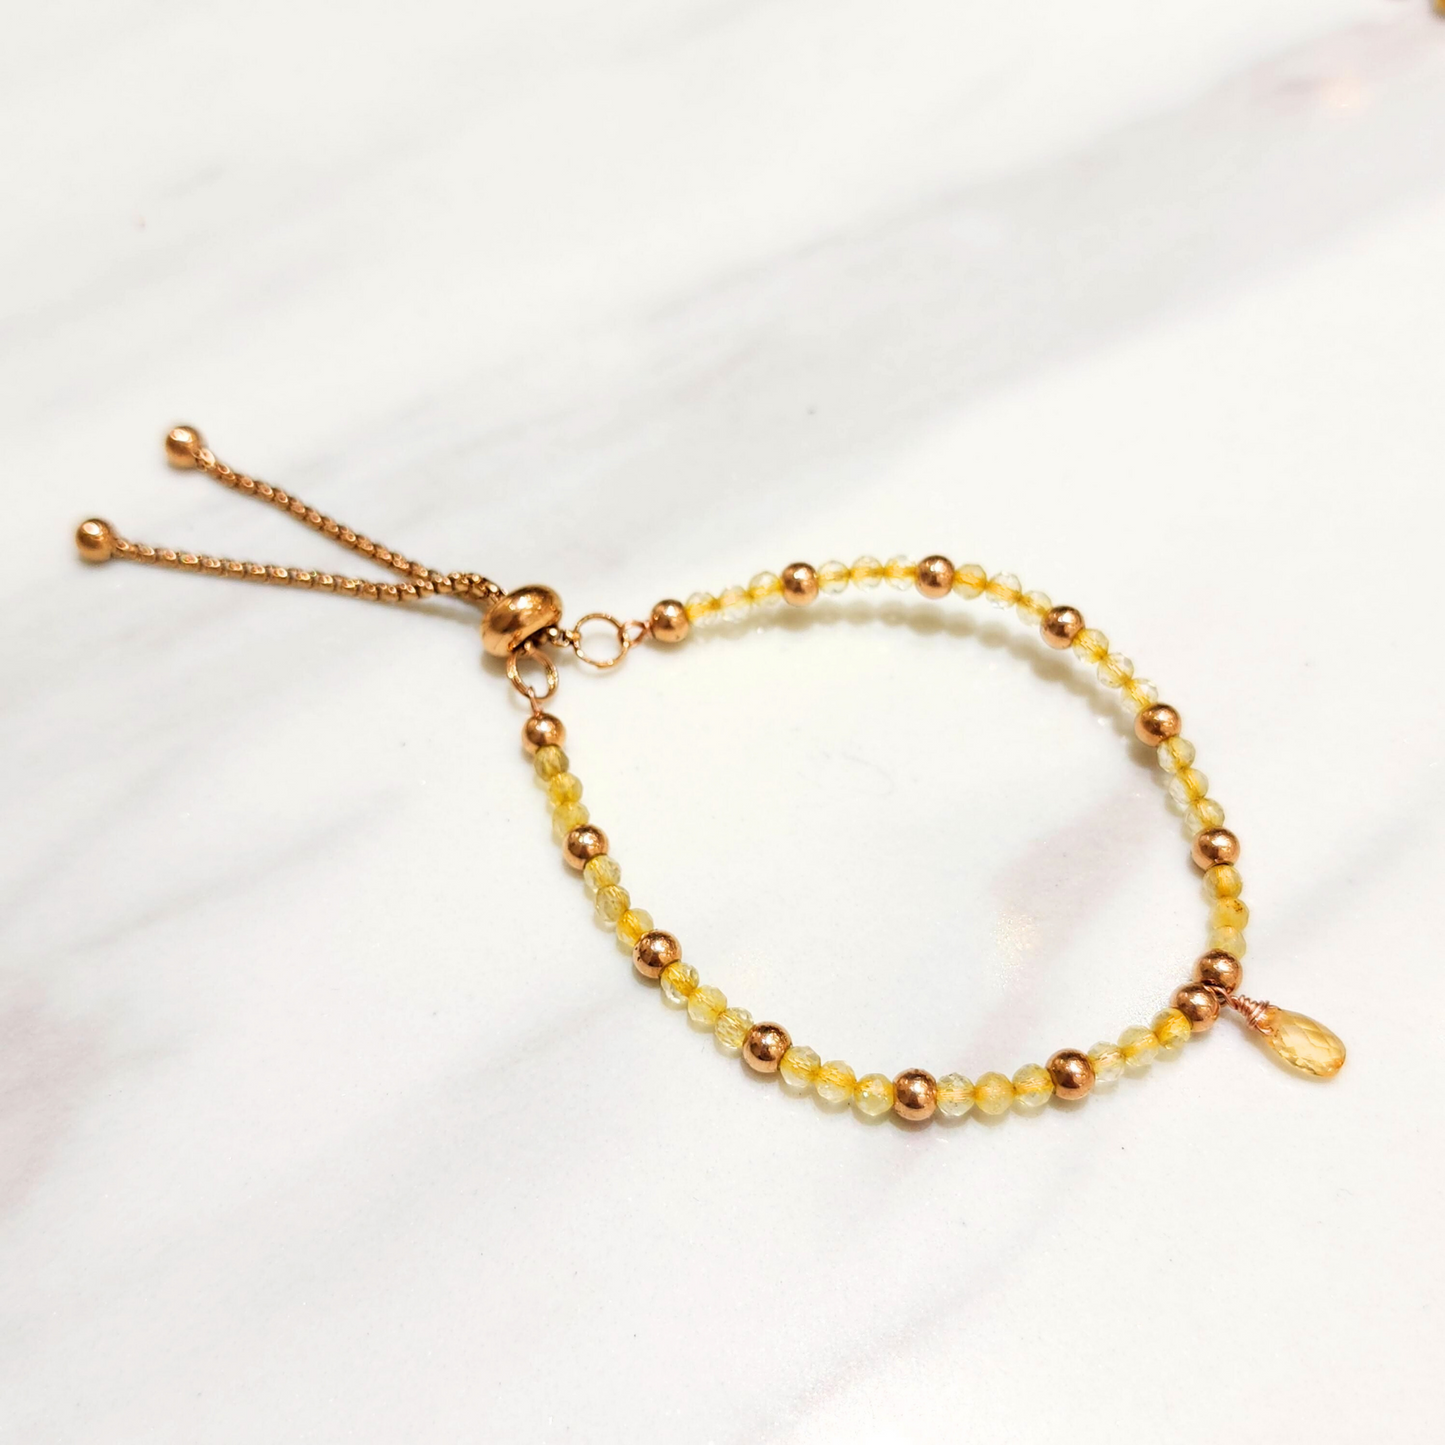 Mini Citrine Beads Retractable Bracelet